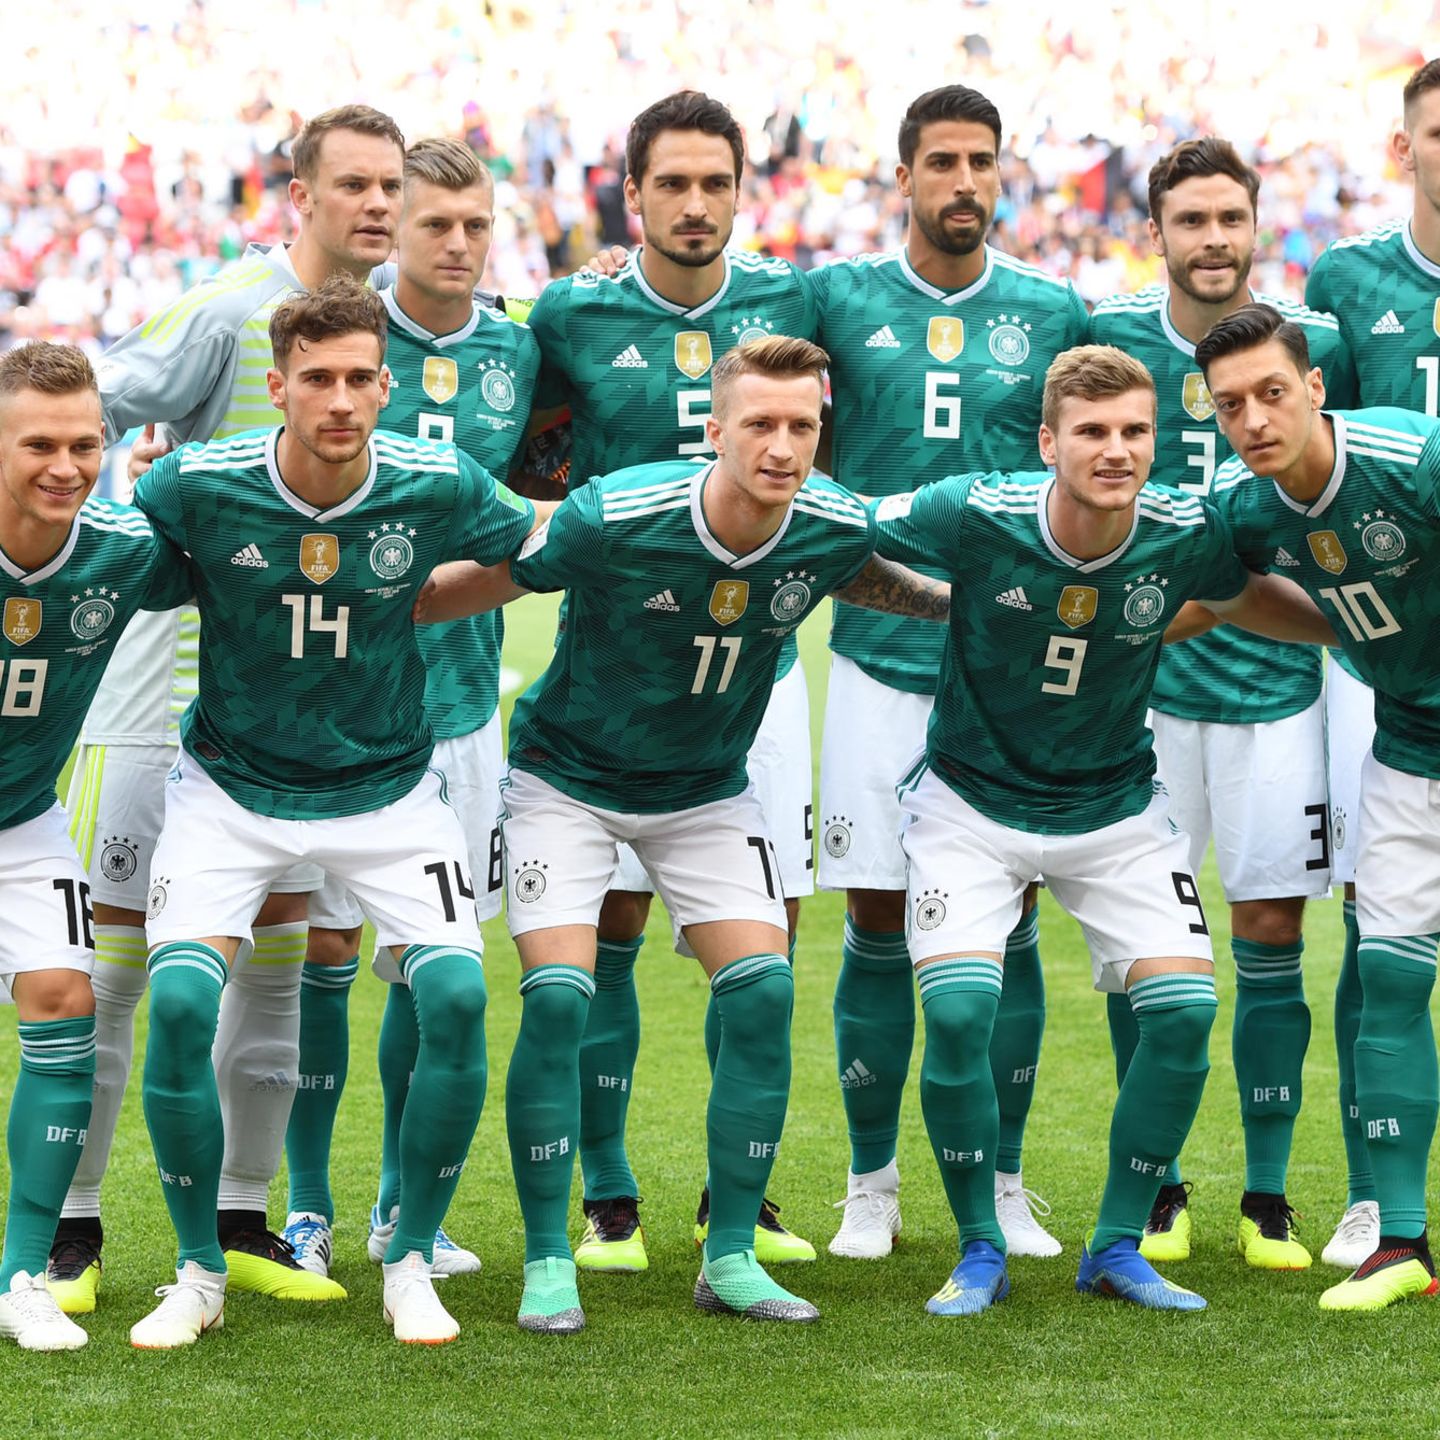 WM 2018: Keine Prämien für deutsche Spieler - WM kommt DFB teuer zu stehen